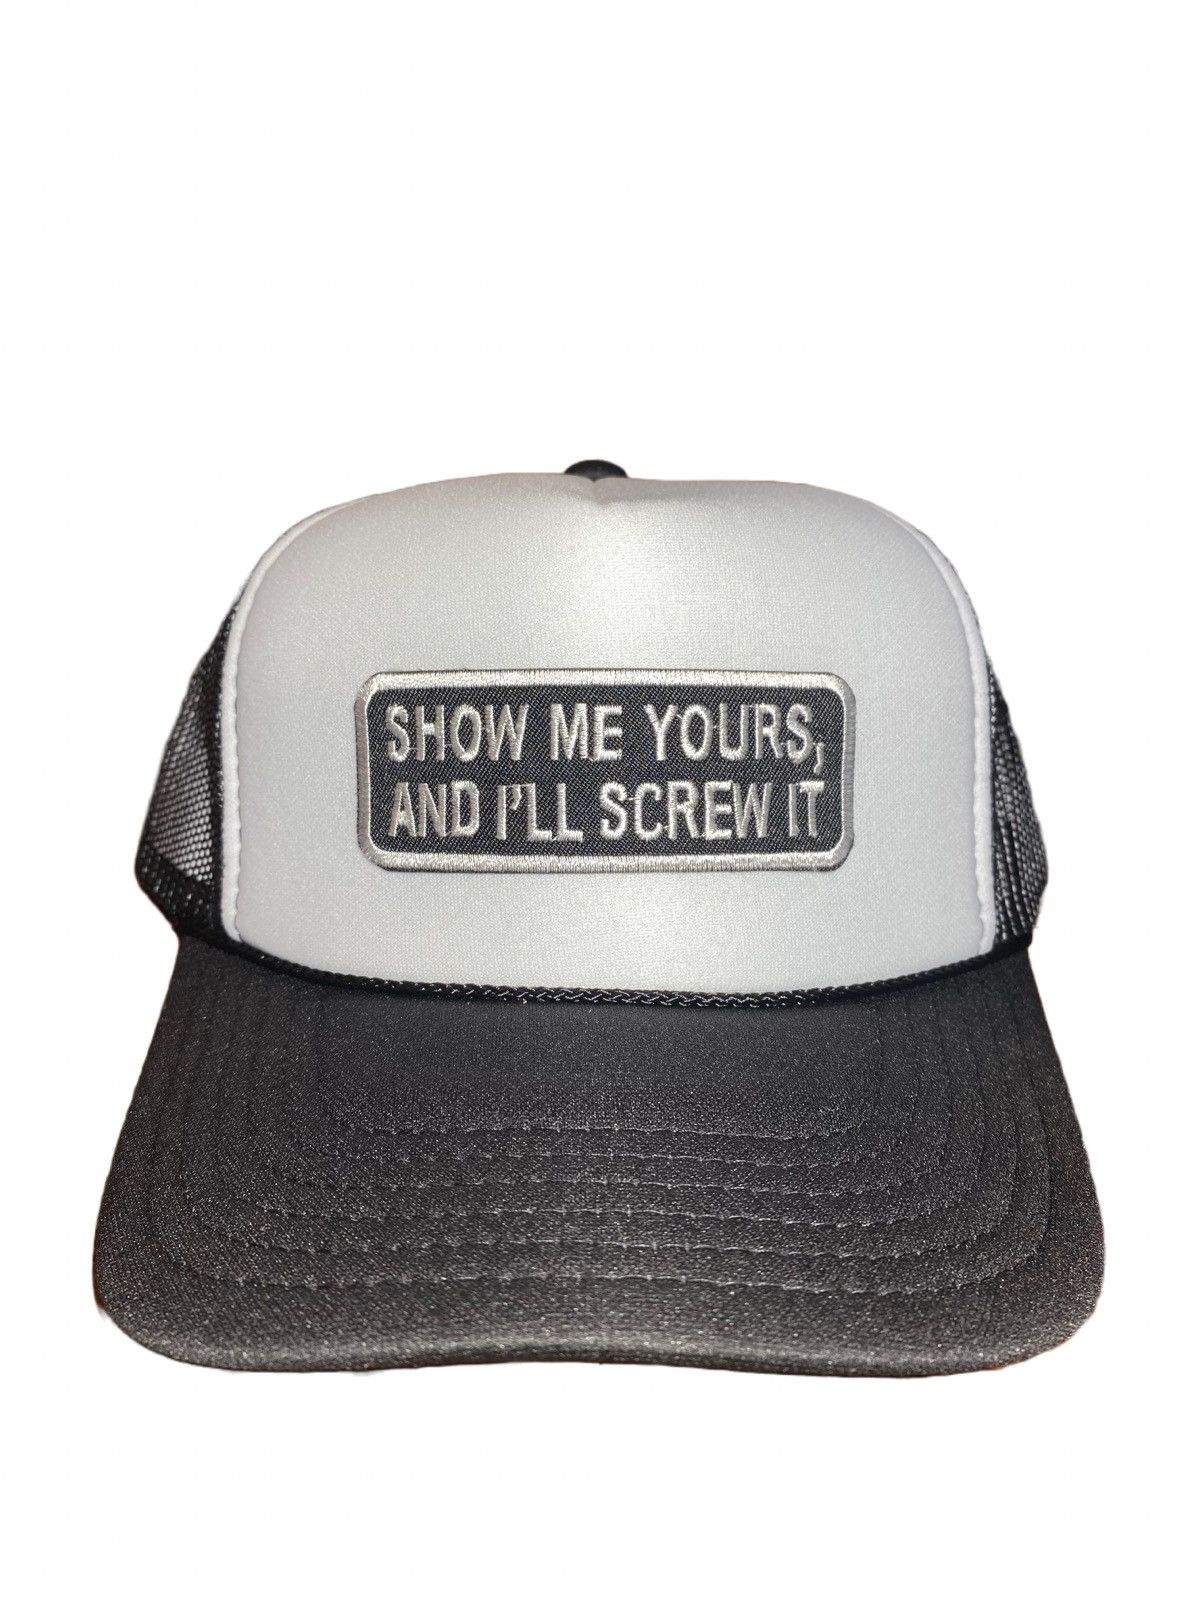 Funny Fuck It Screw It Baseball Cap Retro Vintage Novelty Joke Trucker Hat